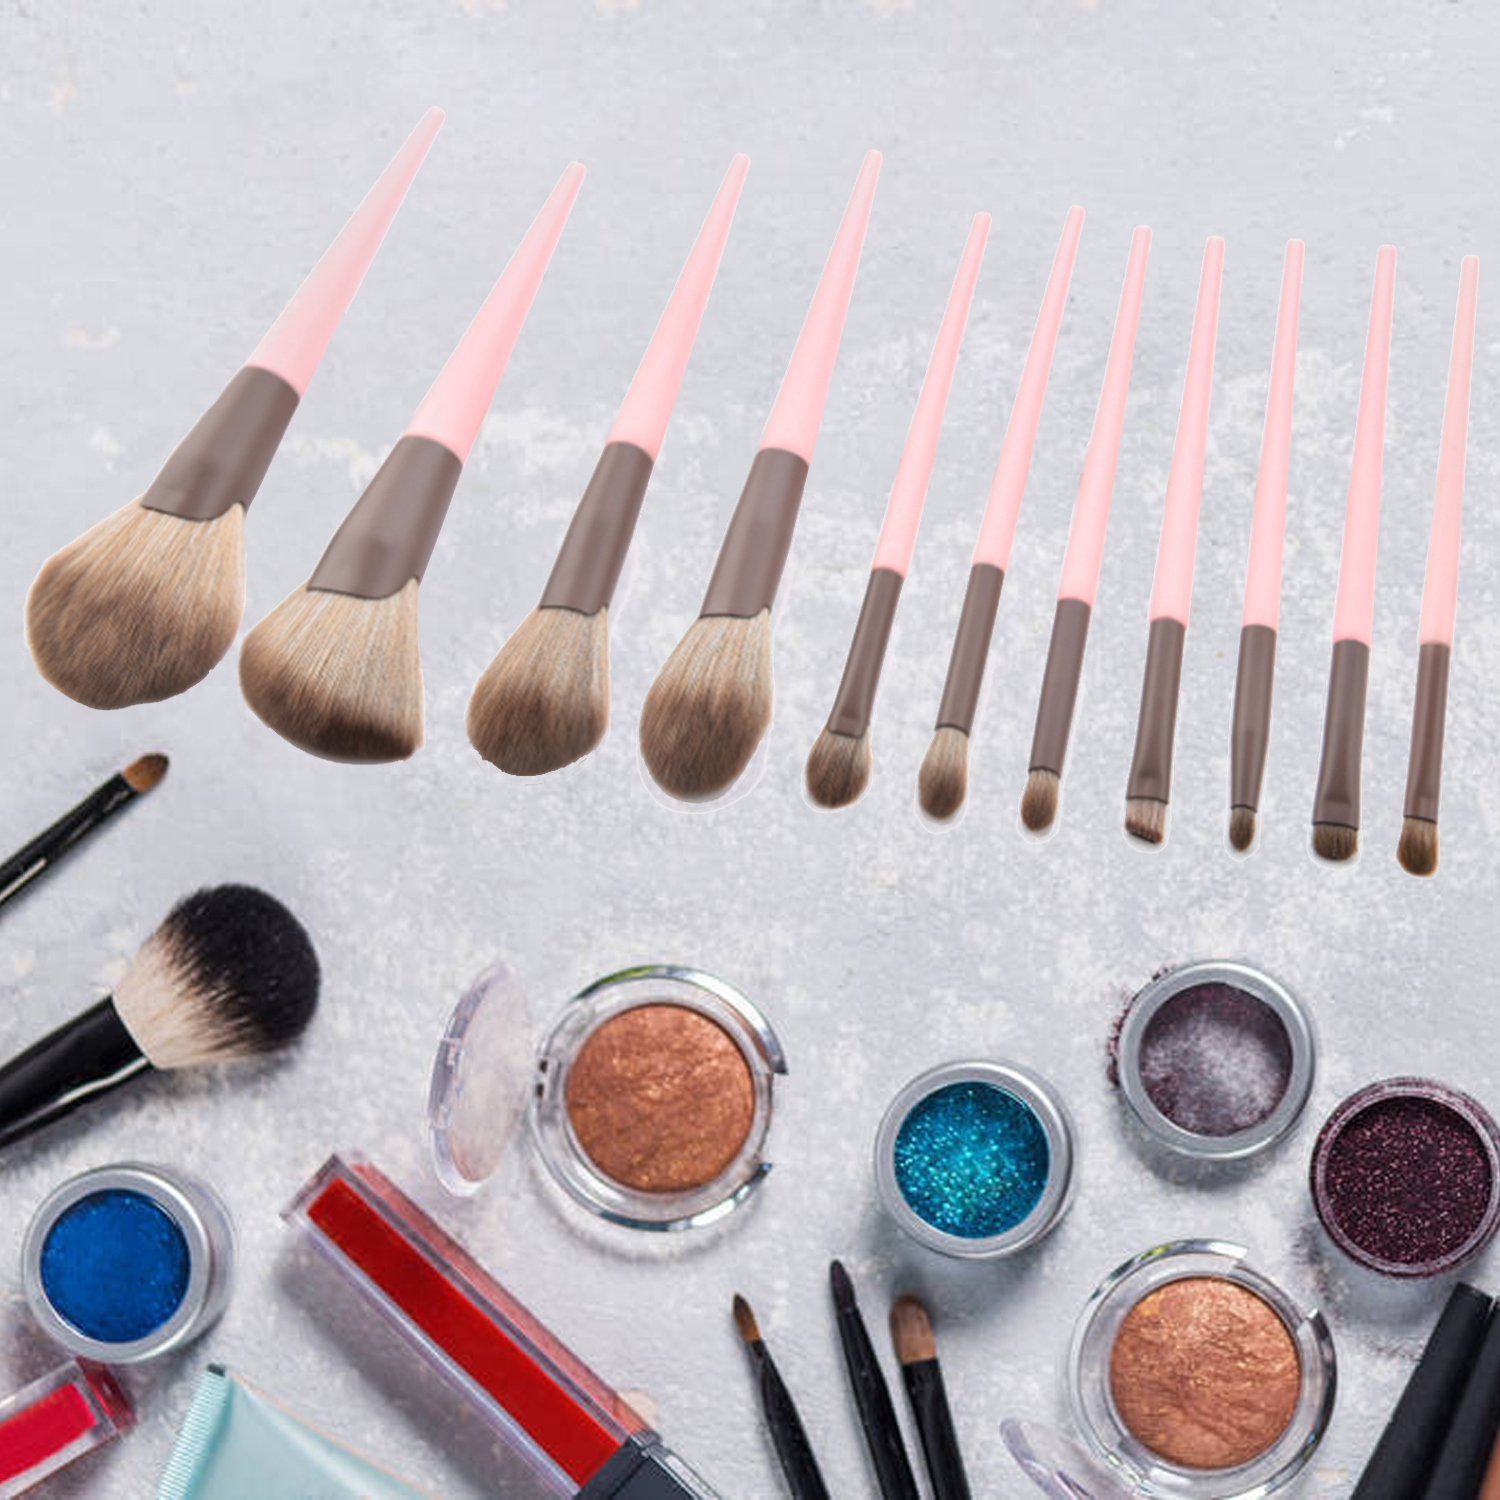 11 Pieces Pink Soft Makeup Brushes Set, Makeup Kit Vegan Single Black Customize Pink Eye Face Cosmetics Makeup Brush Set for Travel